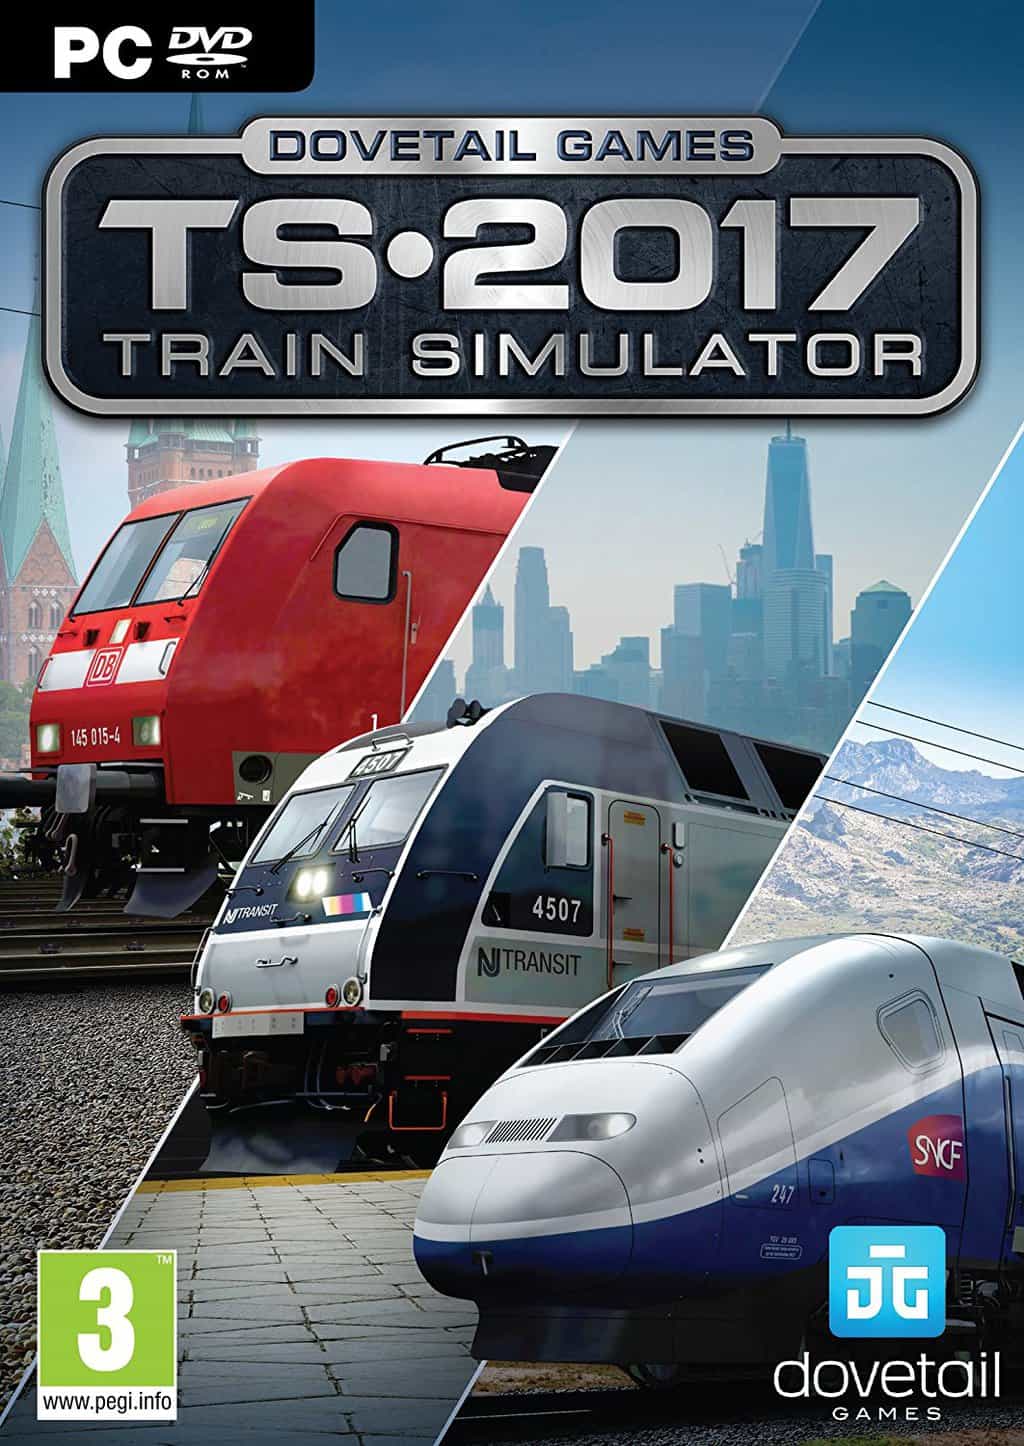 Train simulator pc download